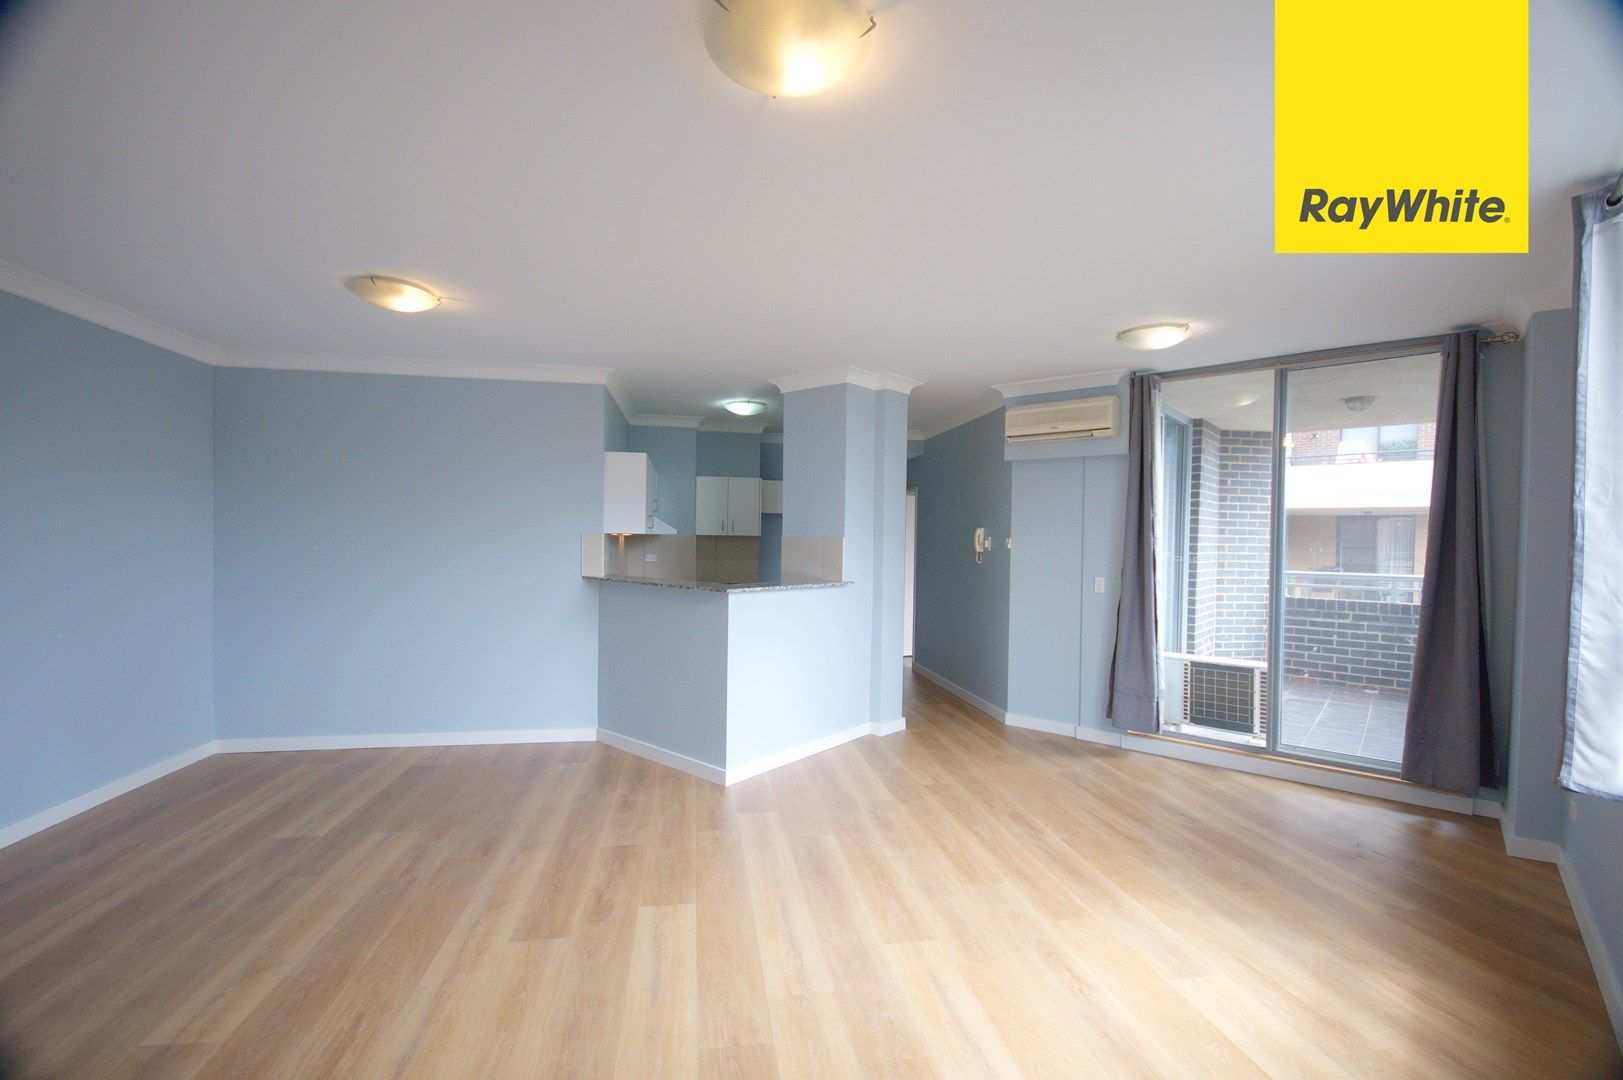 2 bedrooms Apartment / Unit / Flat in 2111/62-72 Queen Street AUBURN NSW, 2144